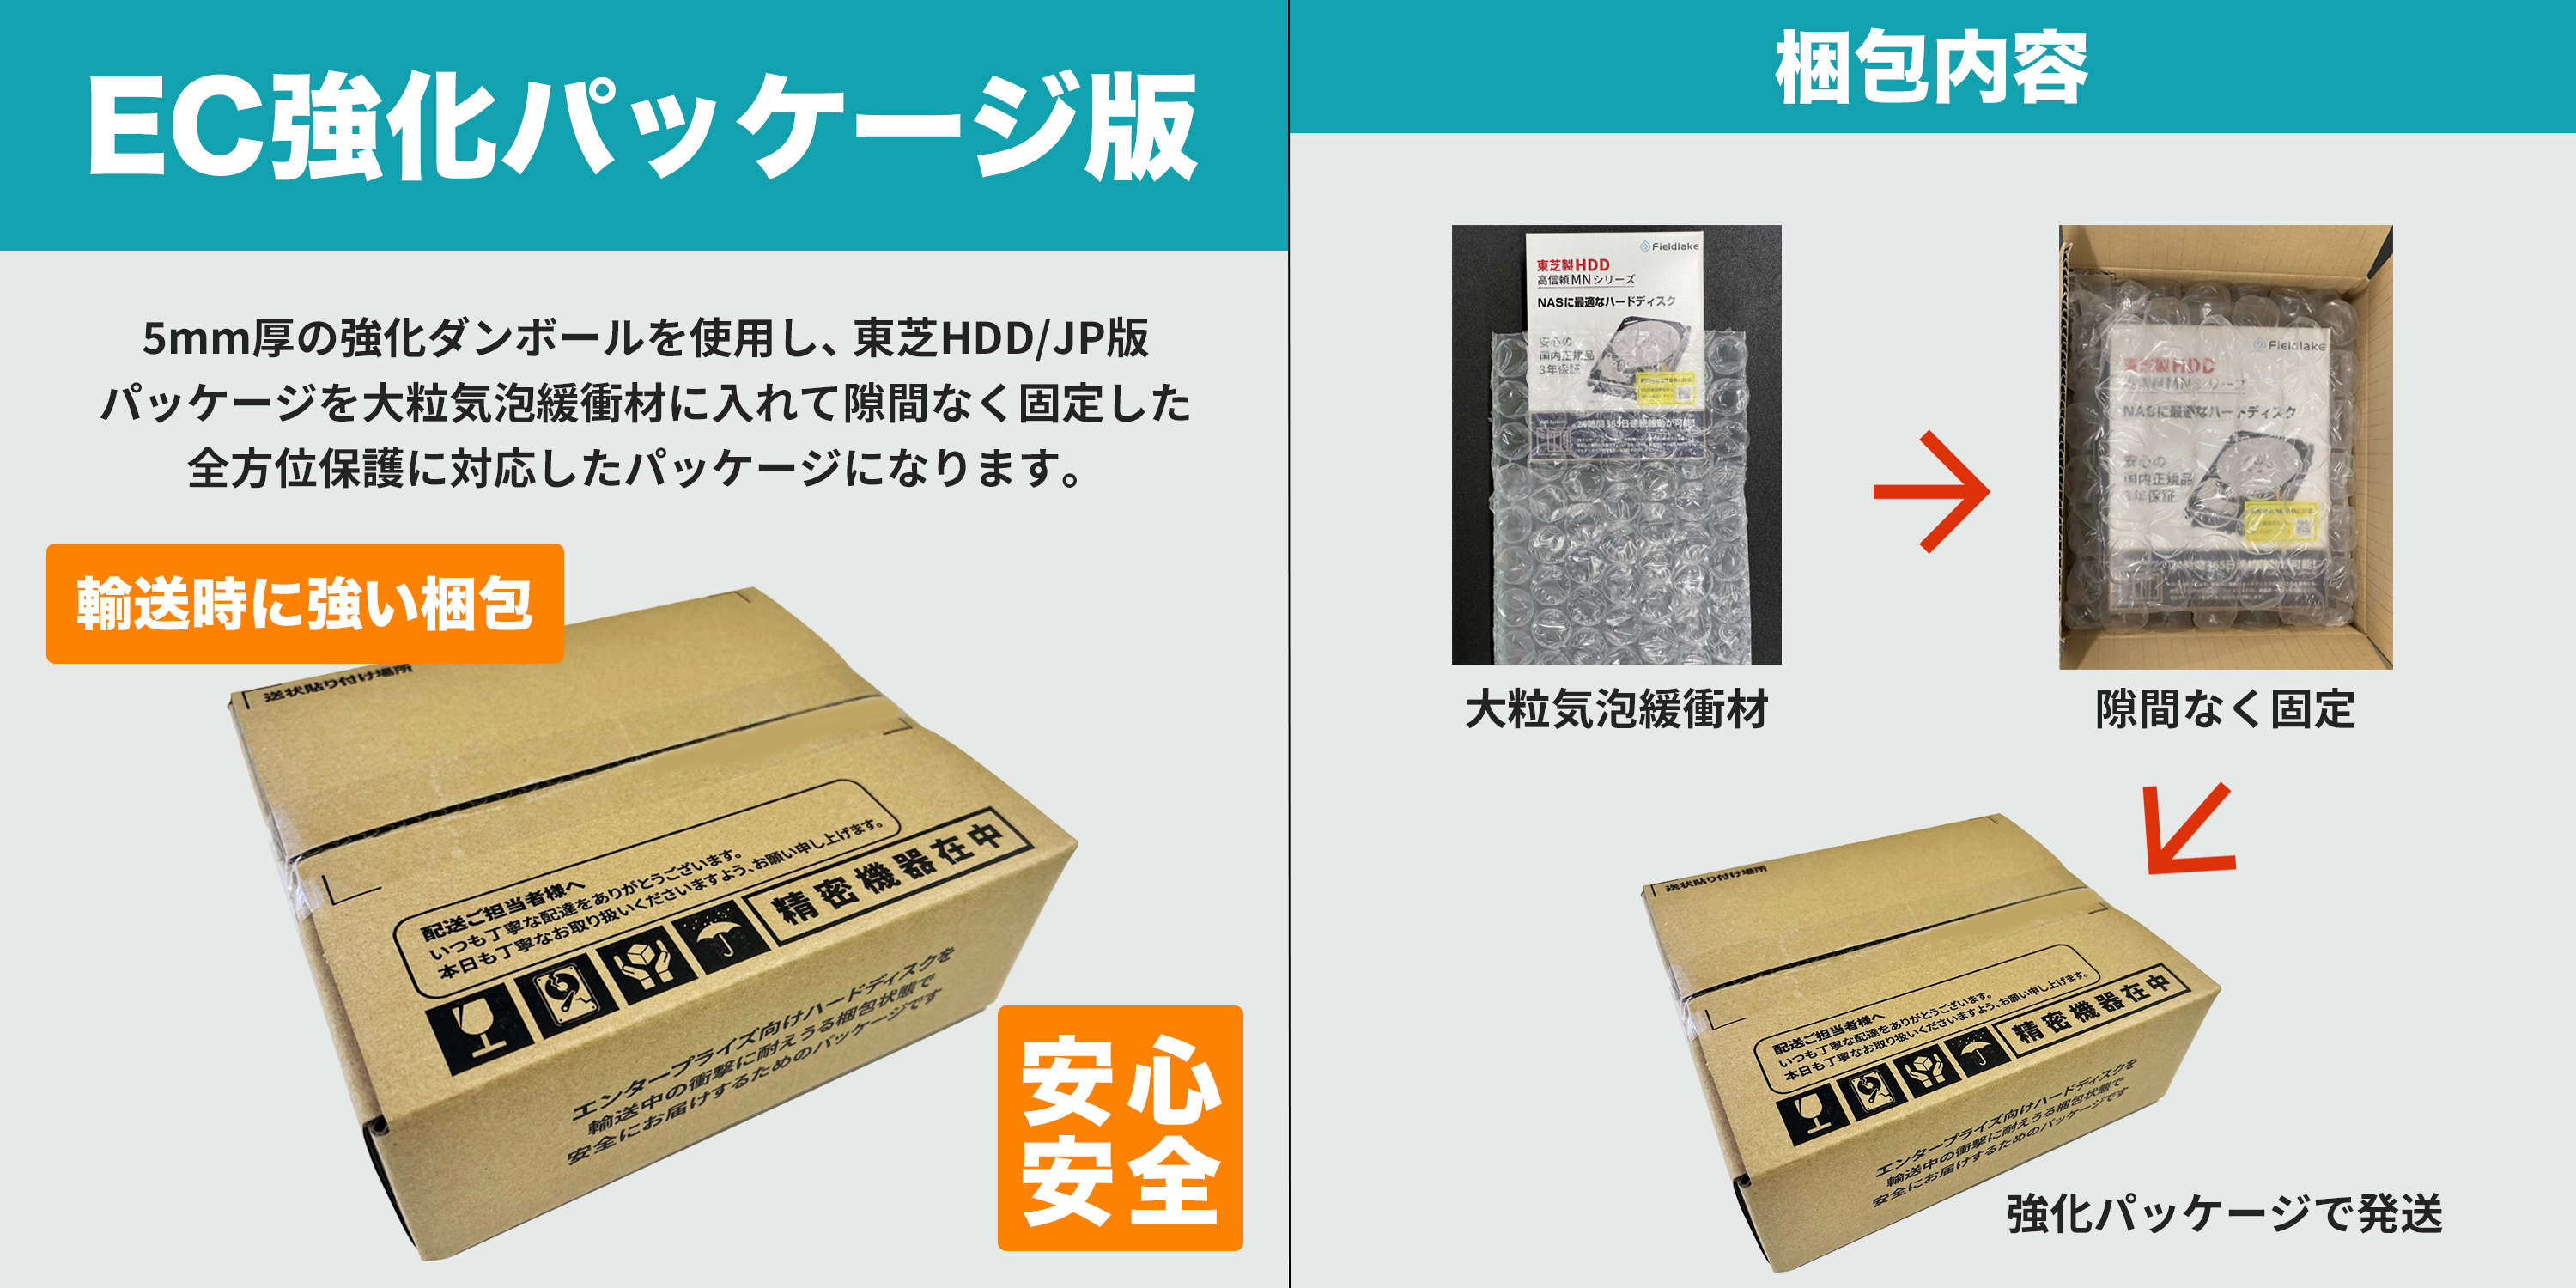 ハードディスクの輸送事故を防止するEC強化パッケージ版(東芝製 